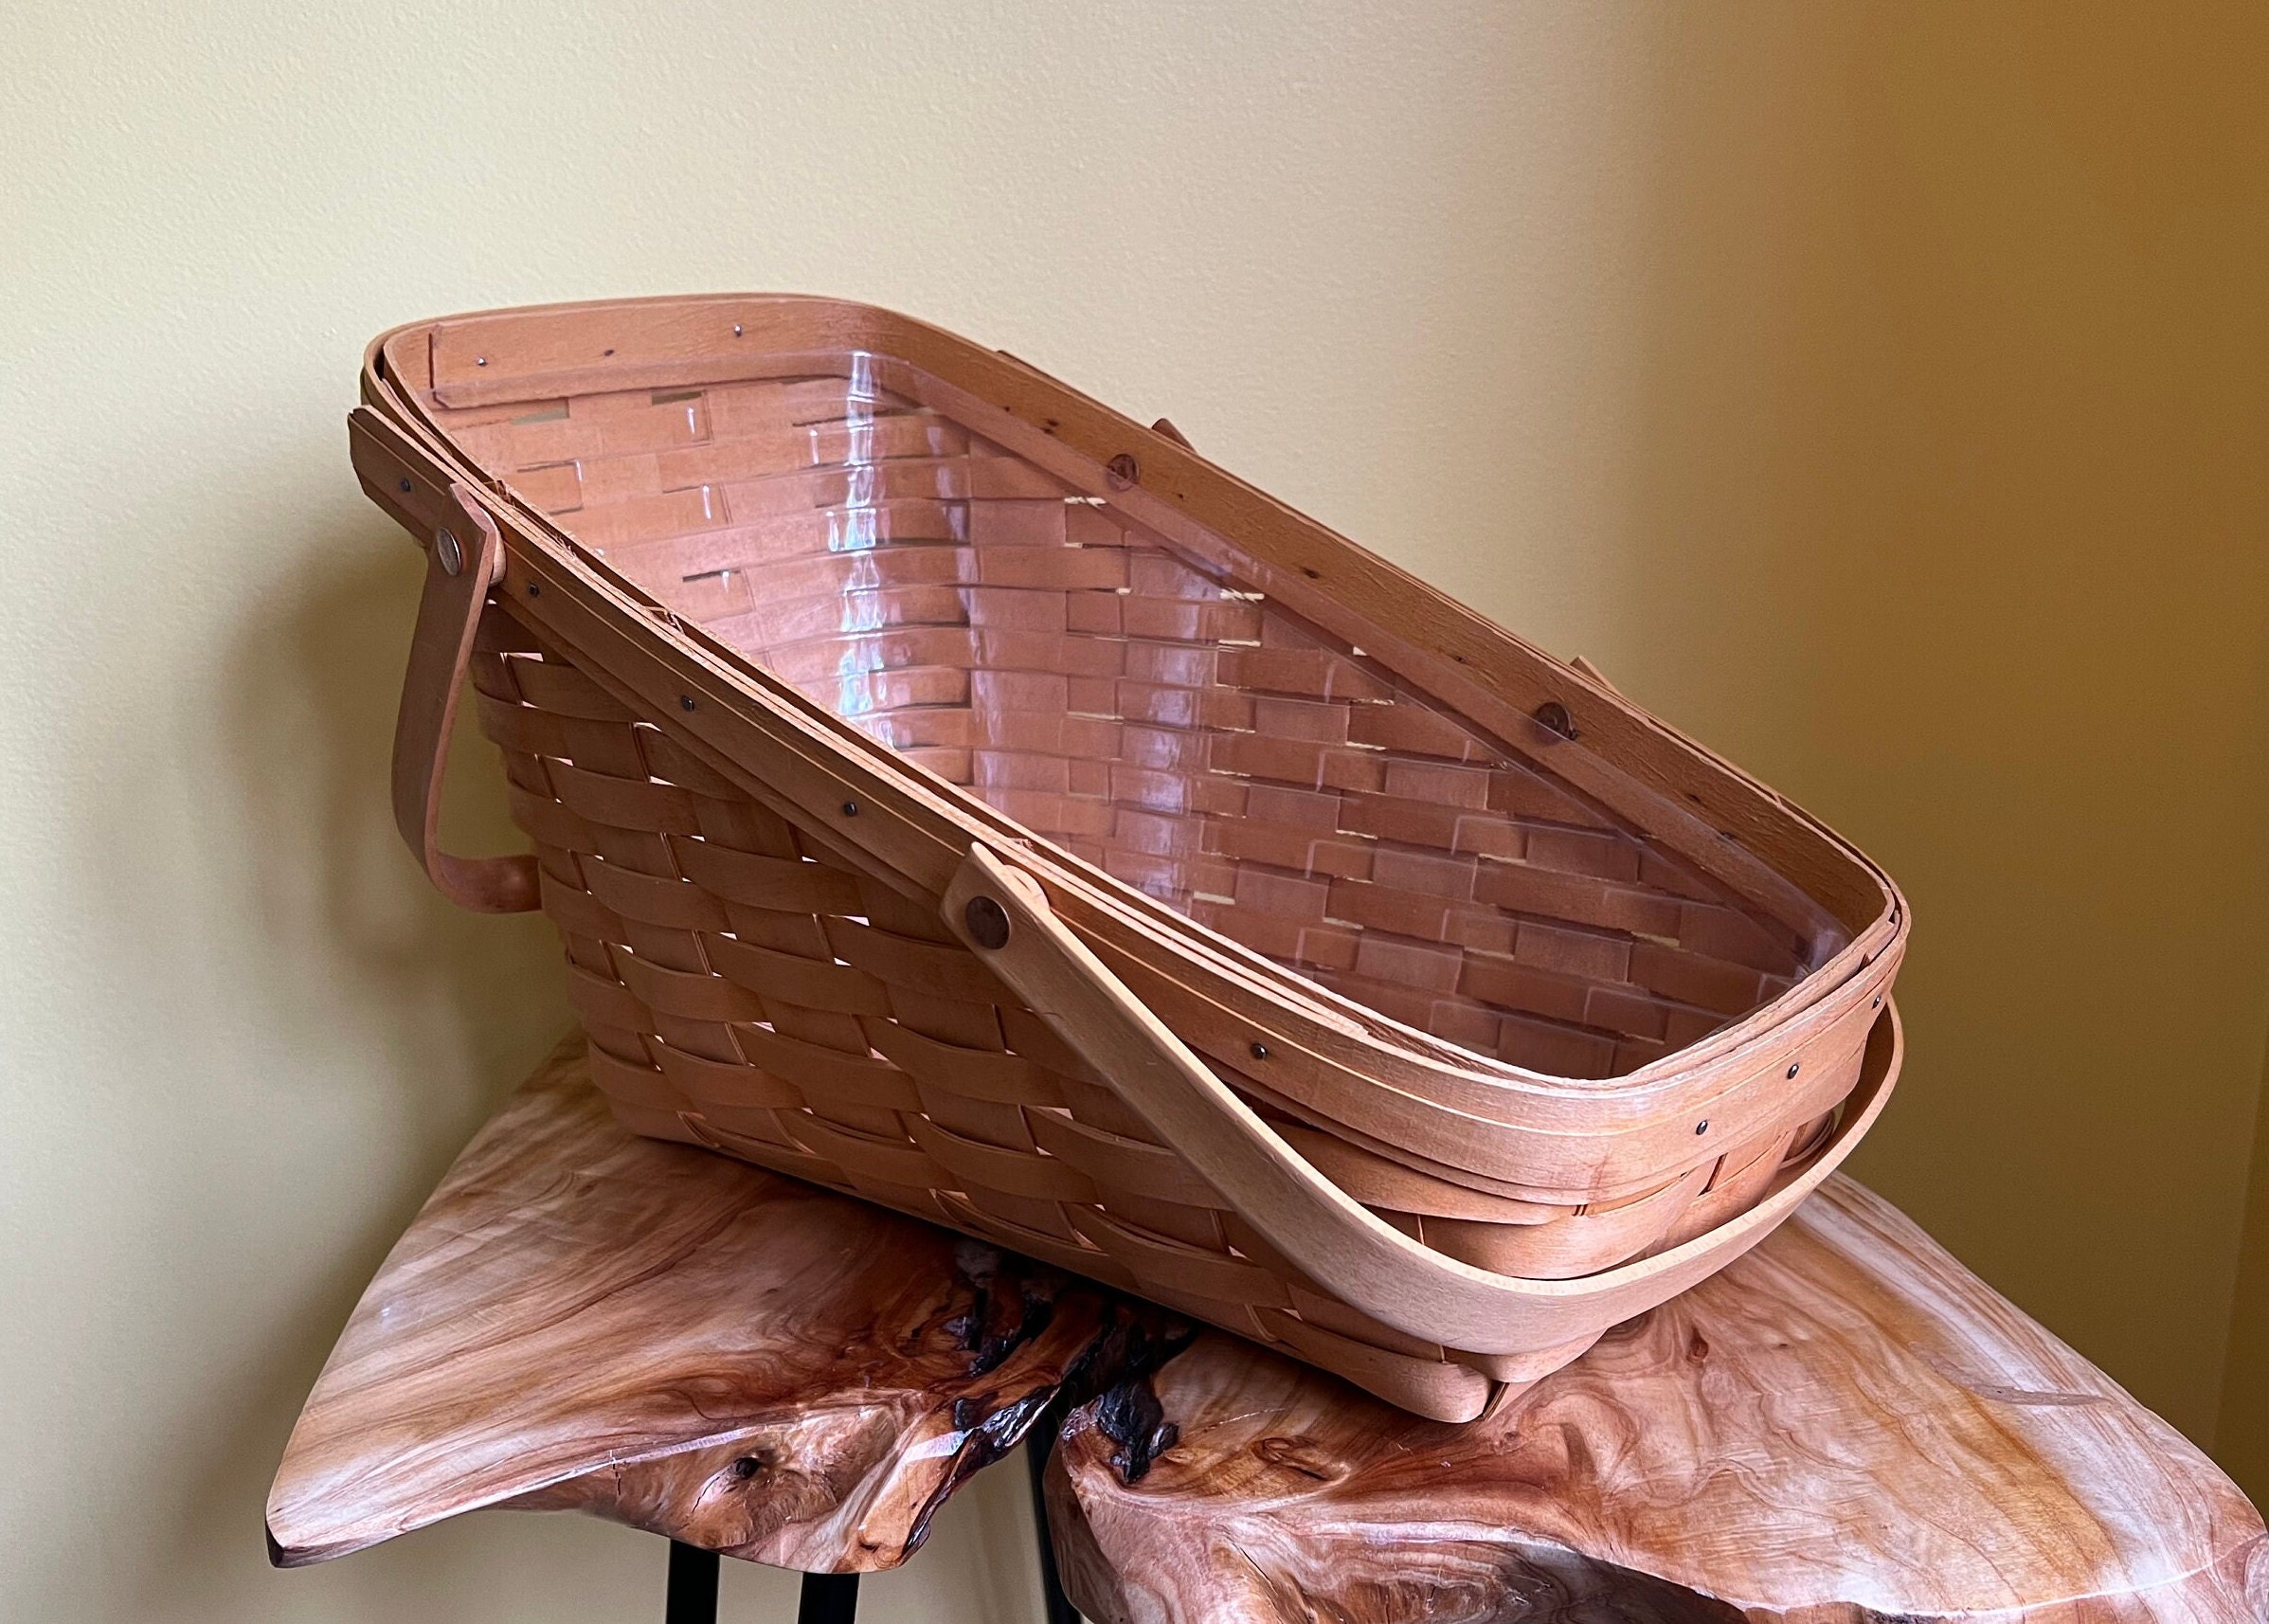 Wooden Fruit Basket, Olive Wood Basket, Vegetable Storage, Pantry  Organization, Kitchen Decor 